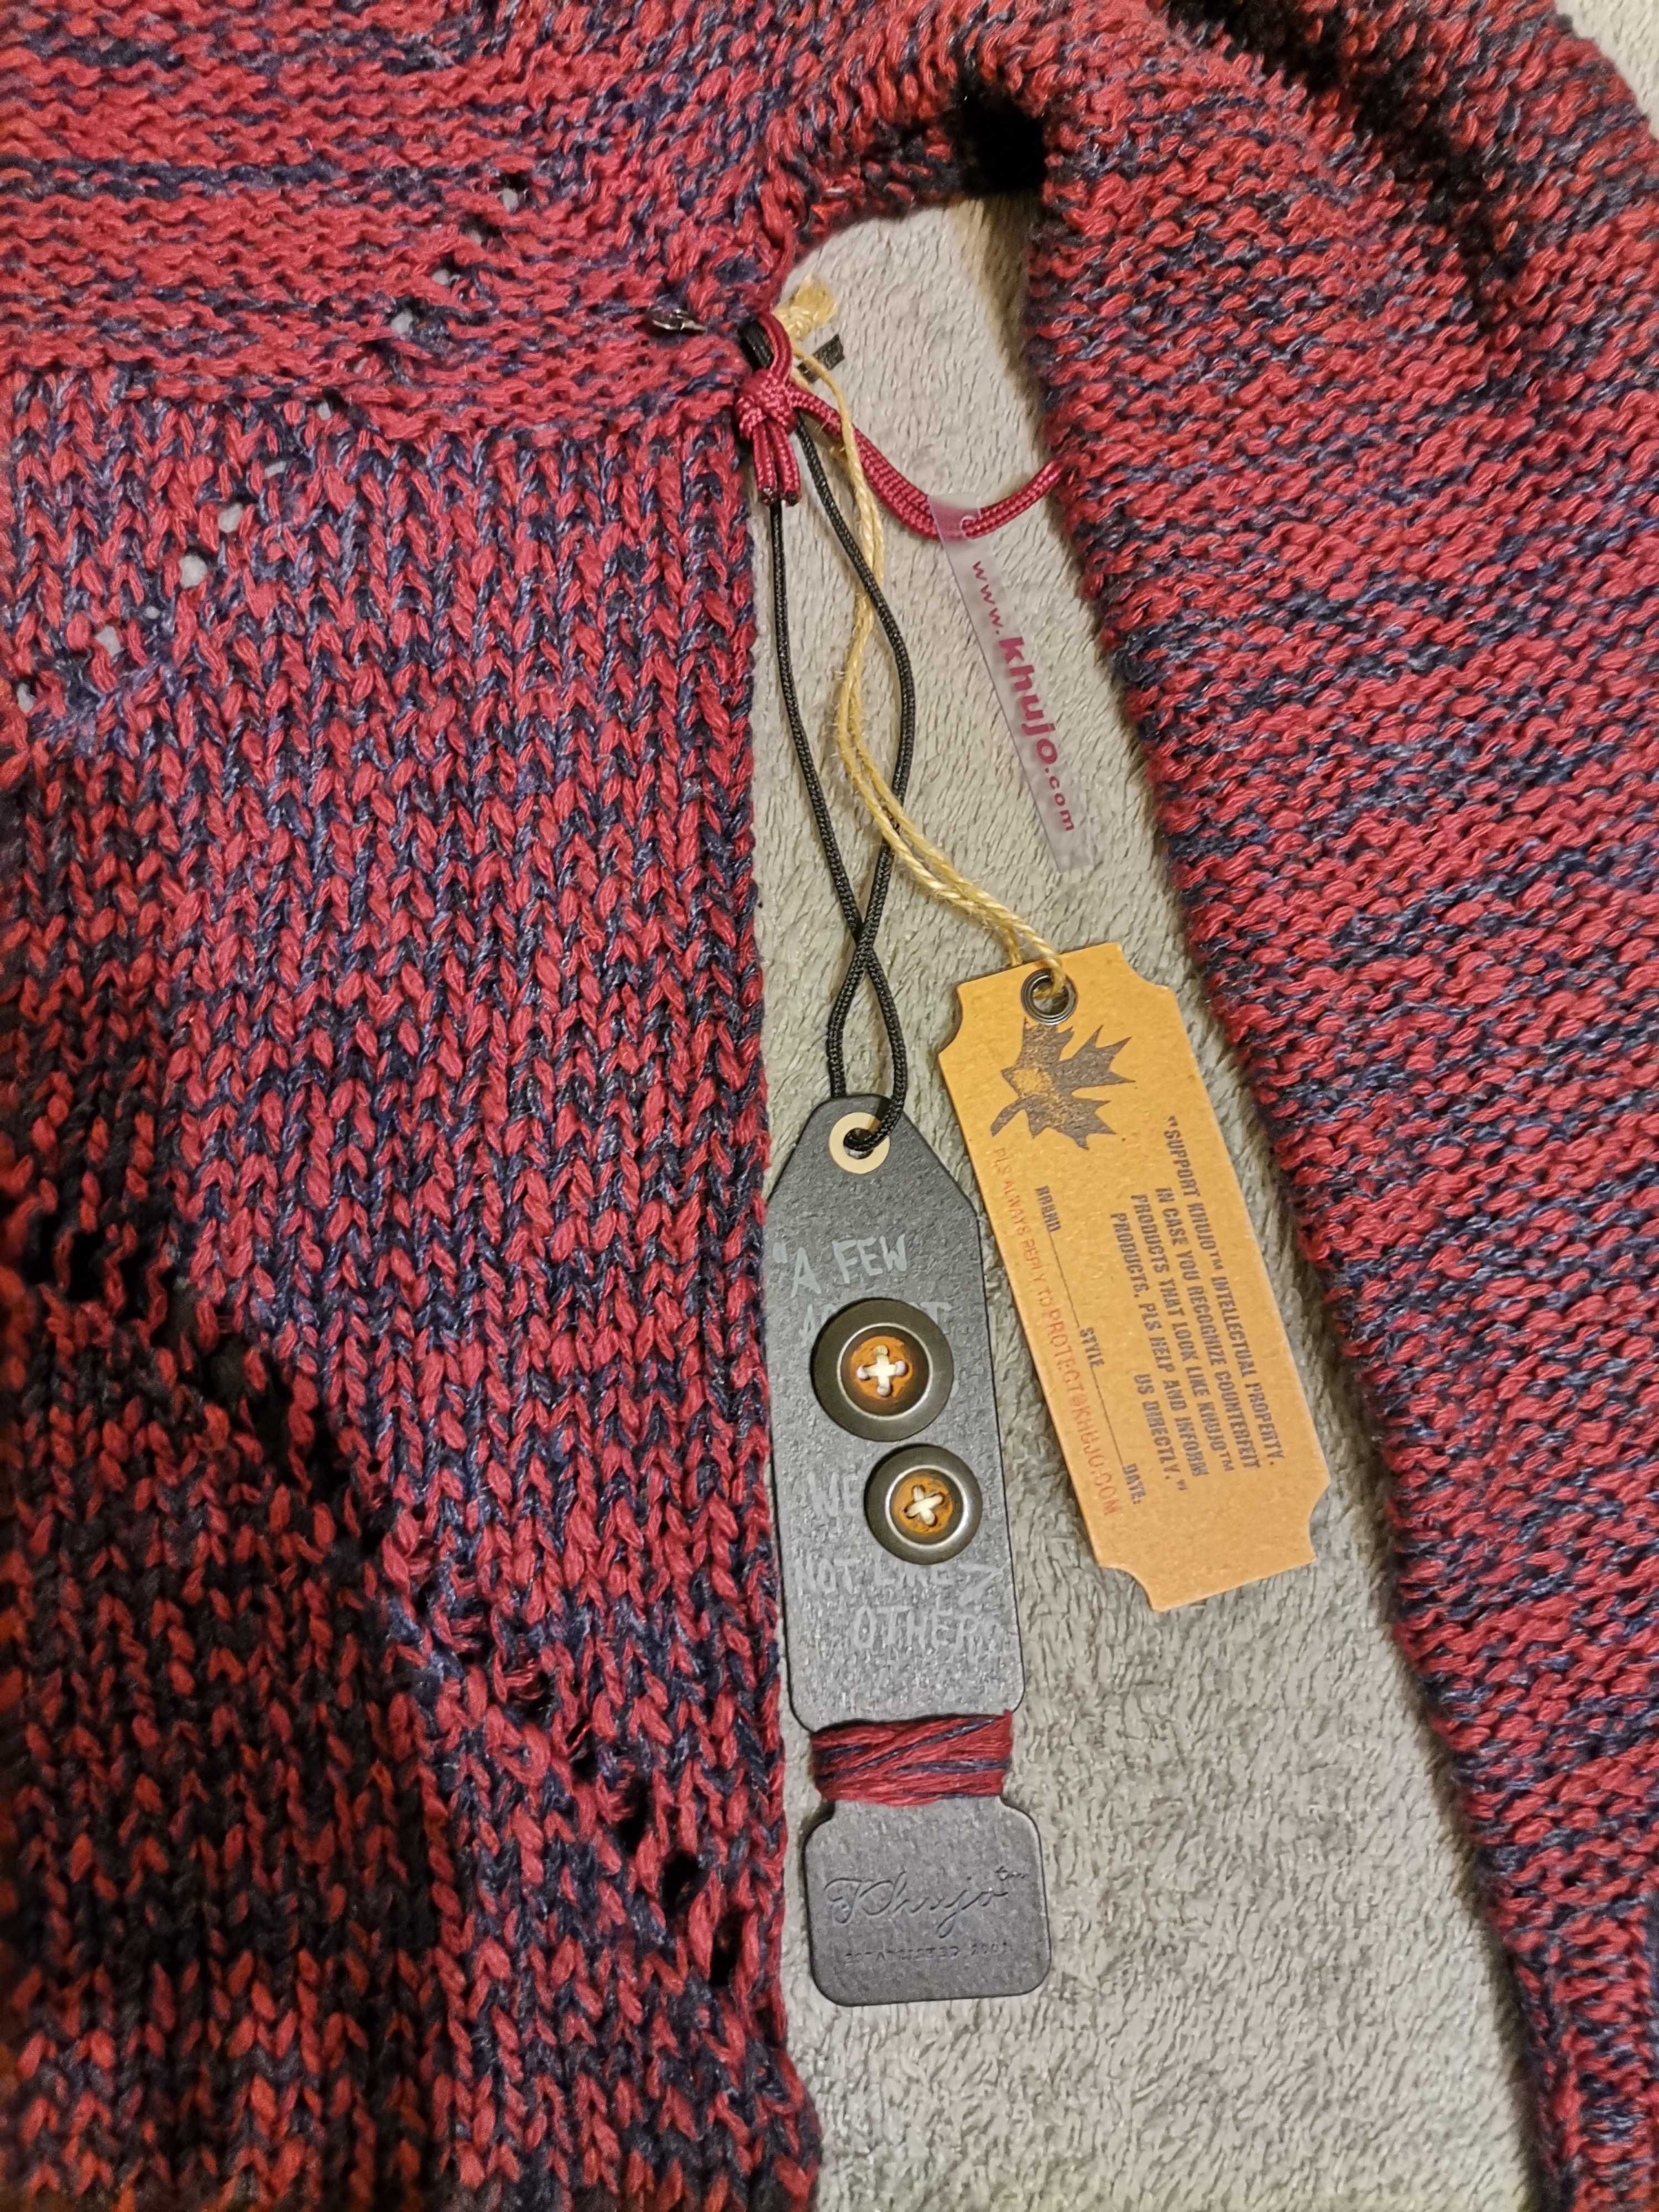 Дамски пуловер "Khujo"(червено със сиво), нов, размер S